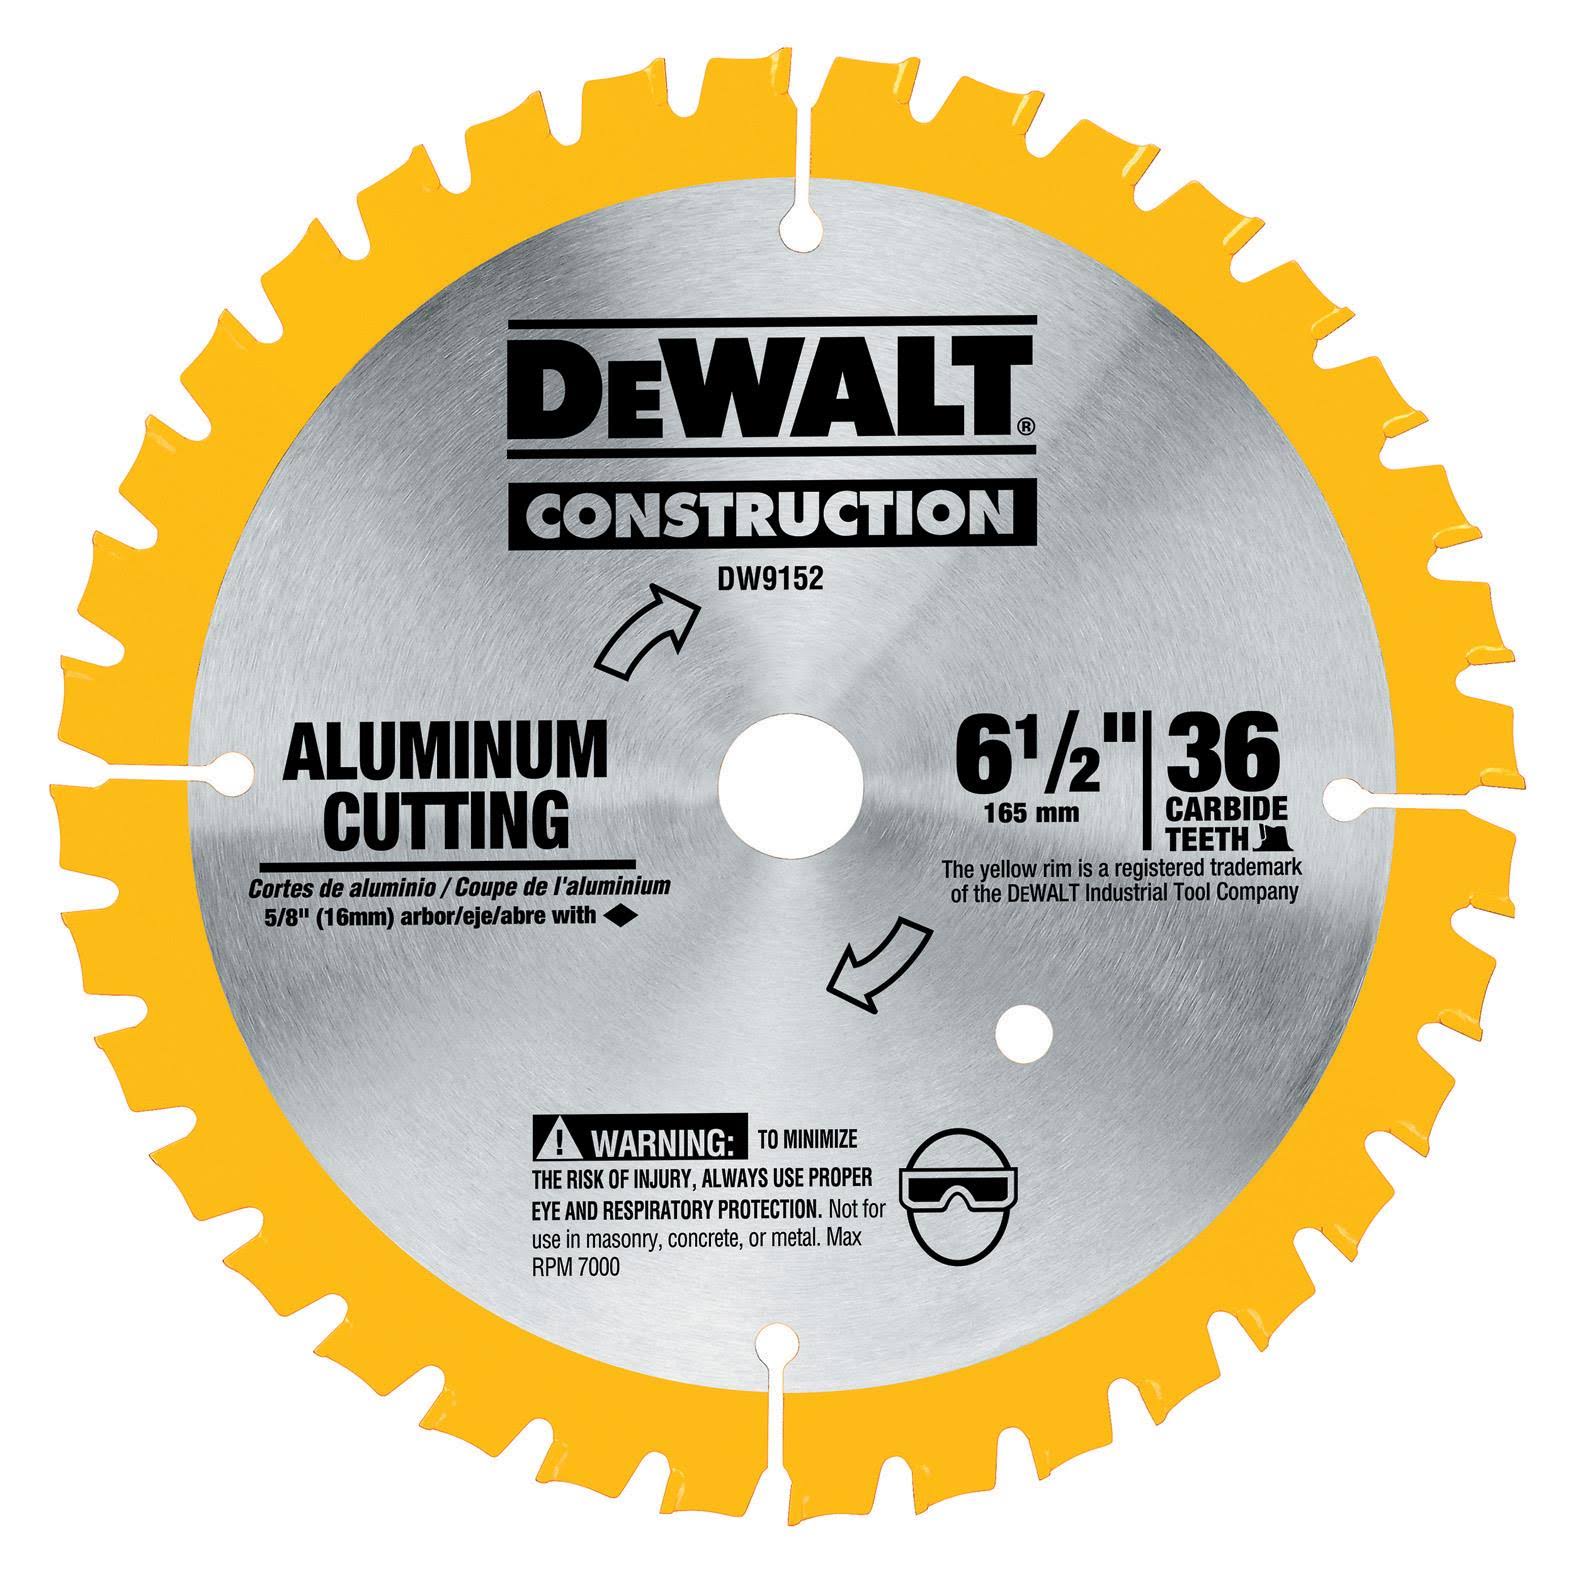 Dewalt Construction Cutting Circular Saw Blade - Aluminum, 165mm, 36T